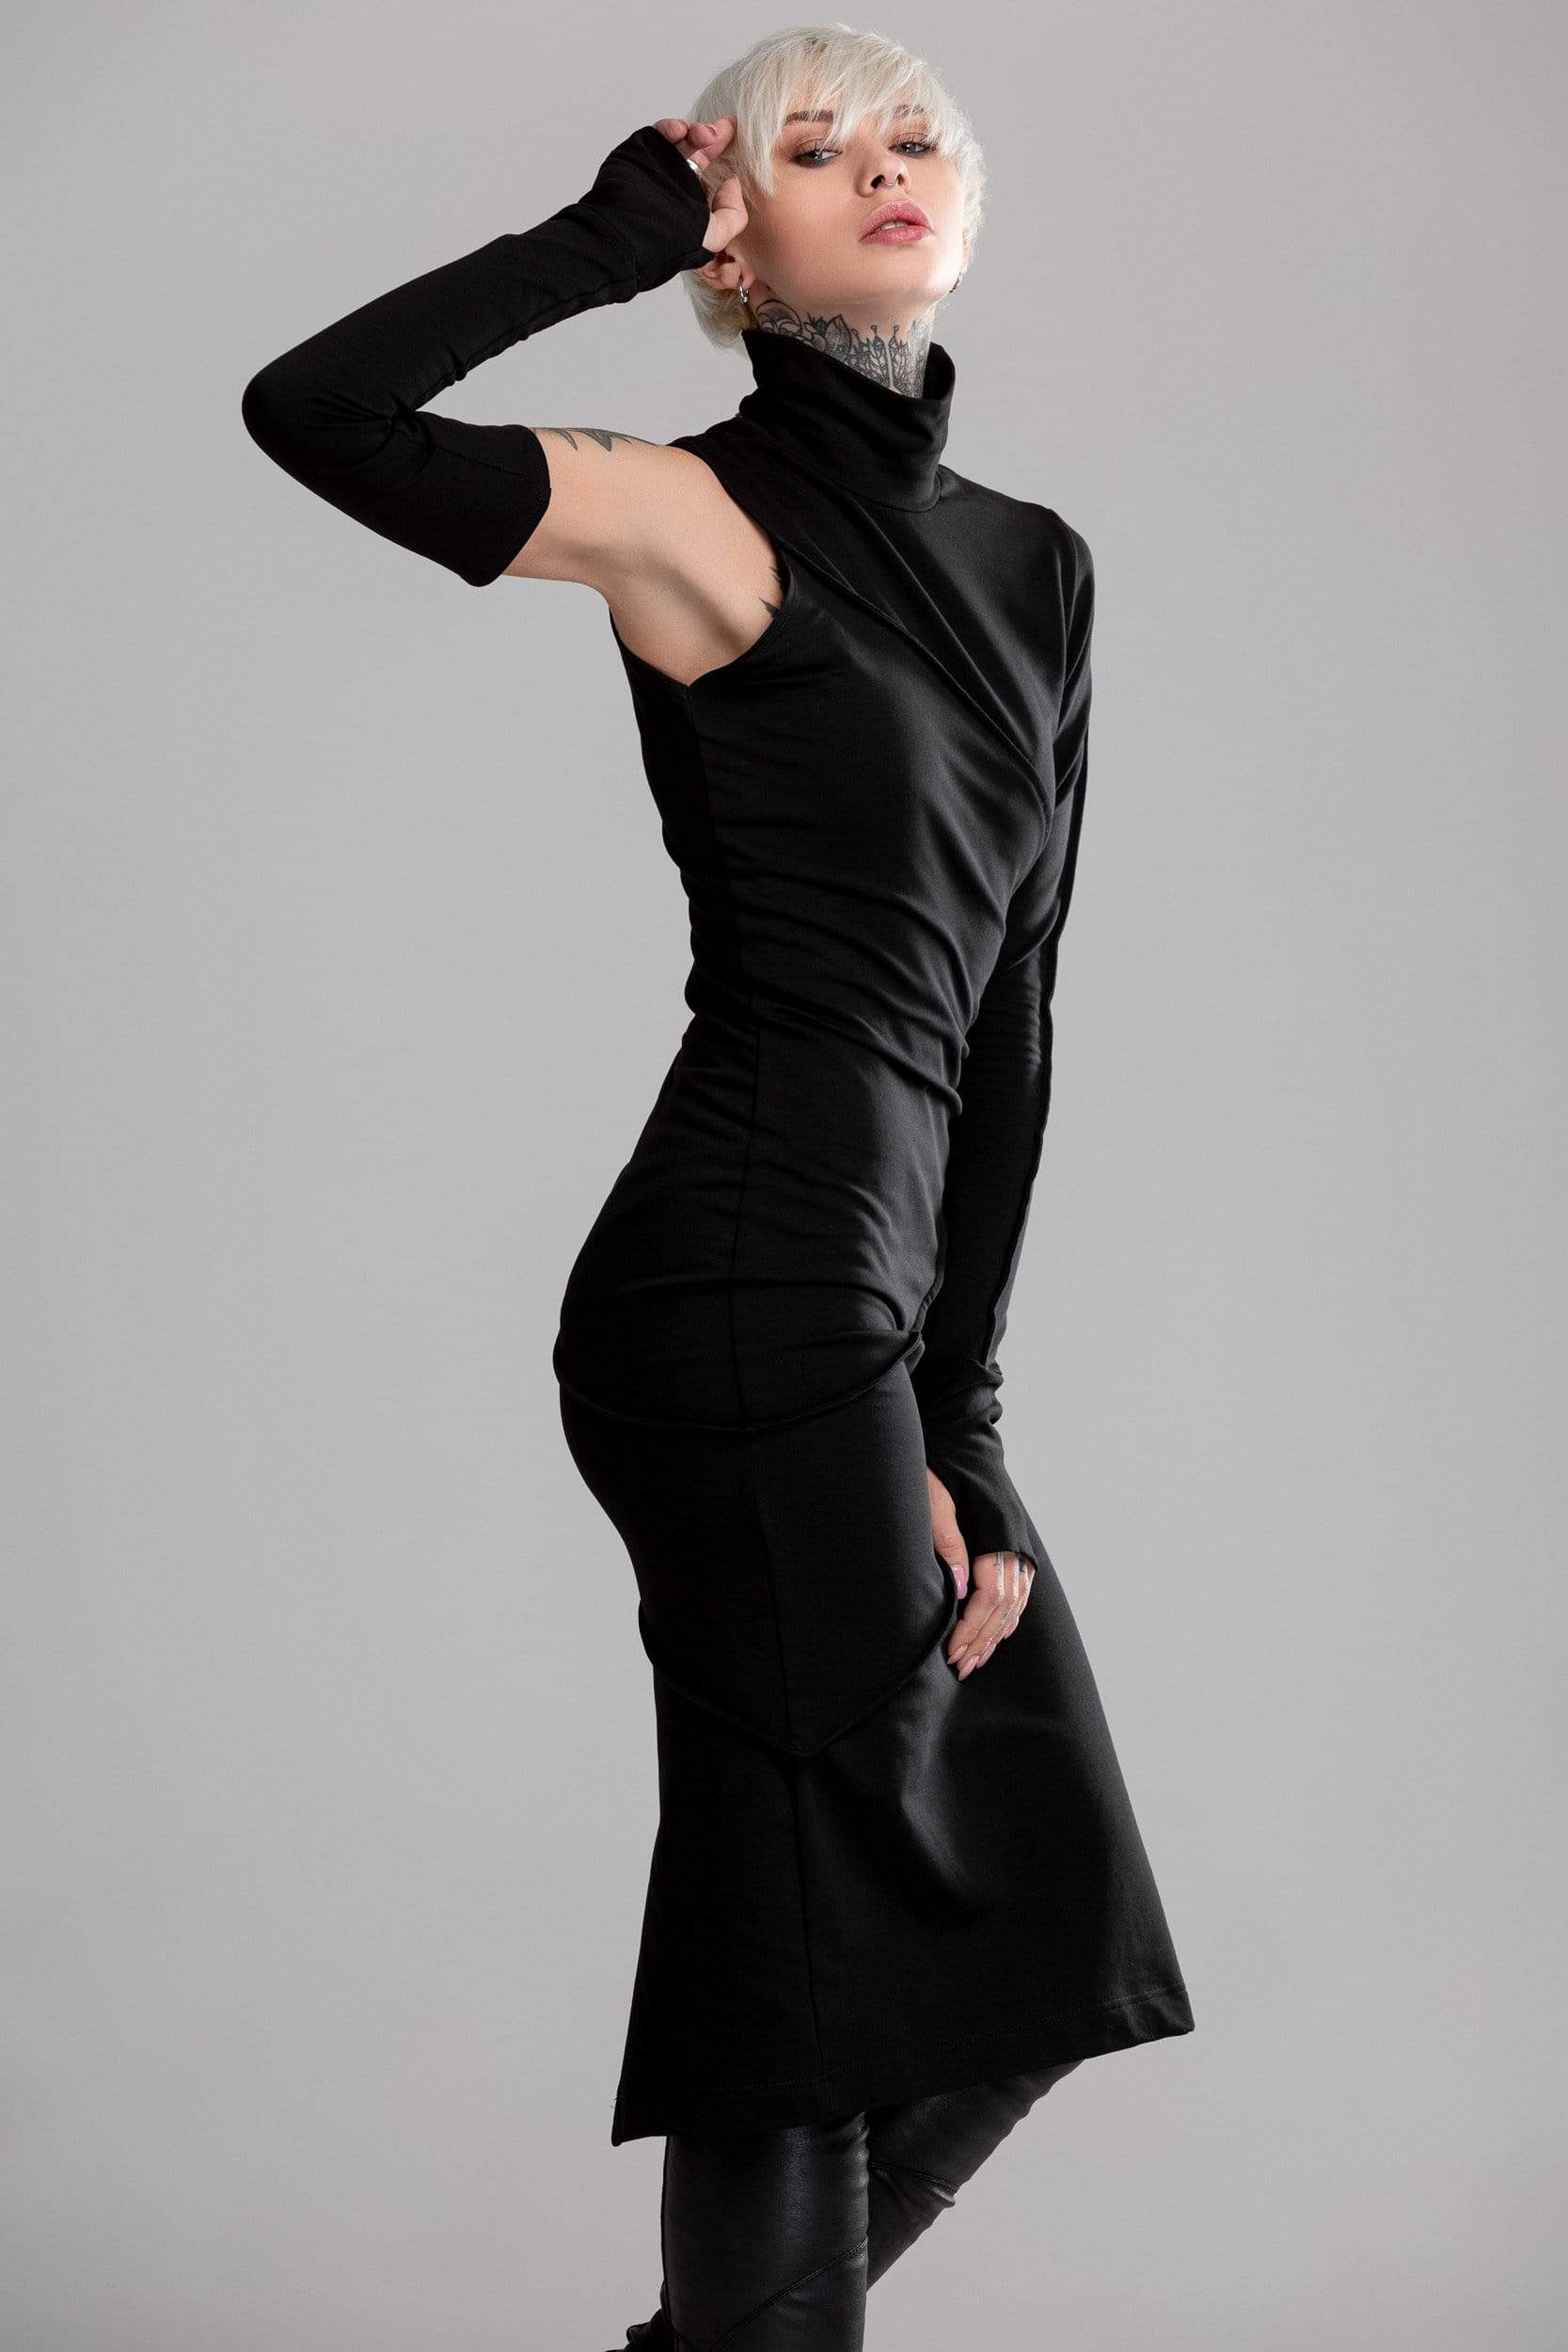 MDNT45 Minimalistic black dress